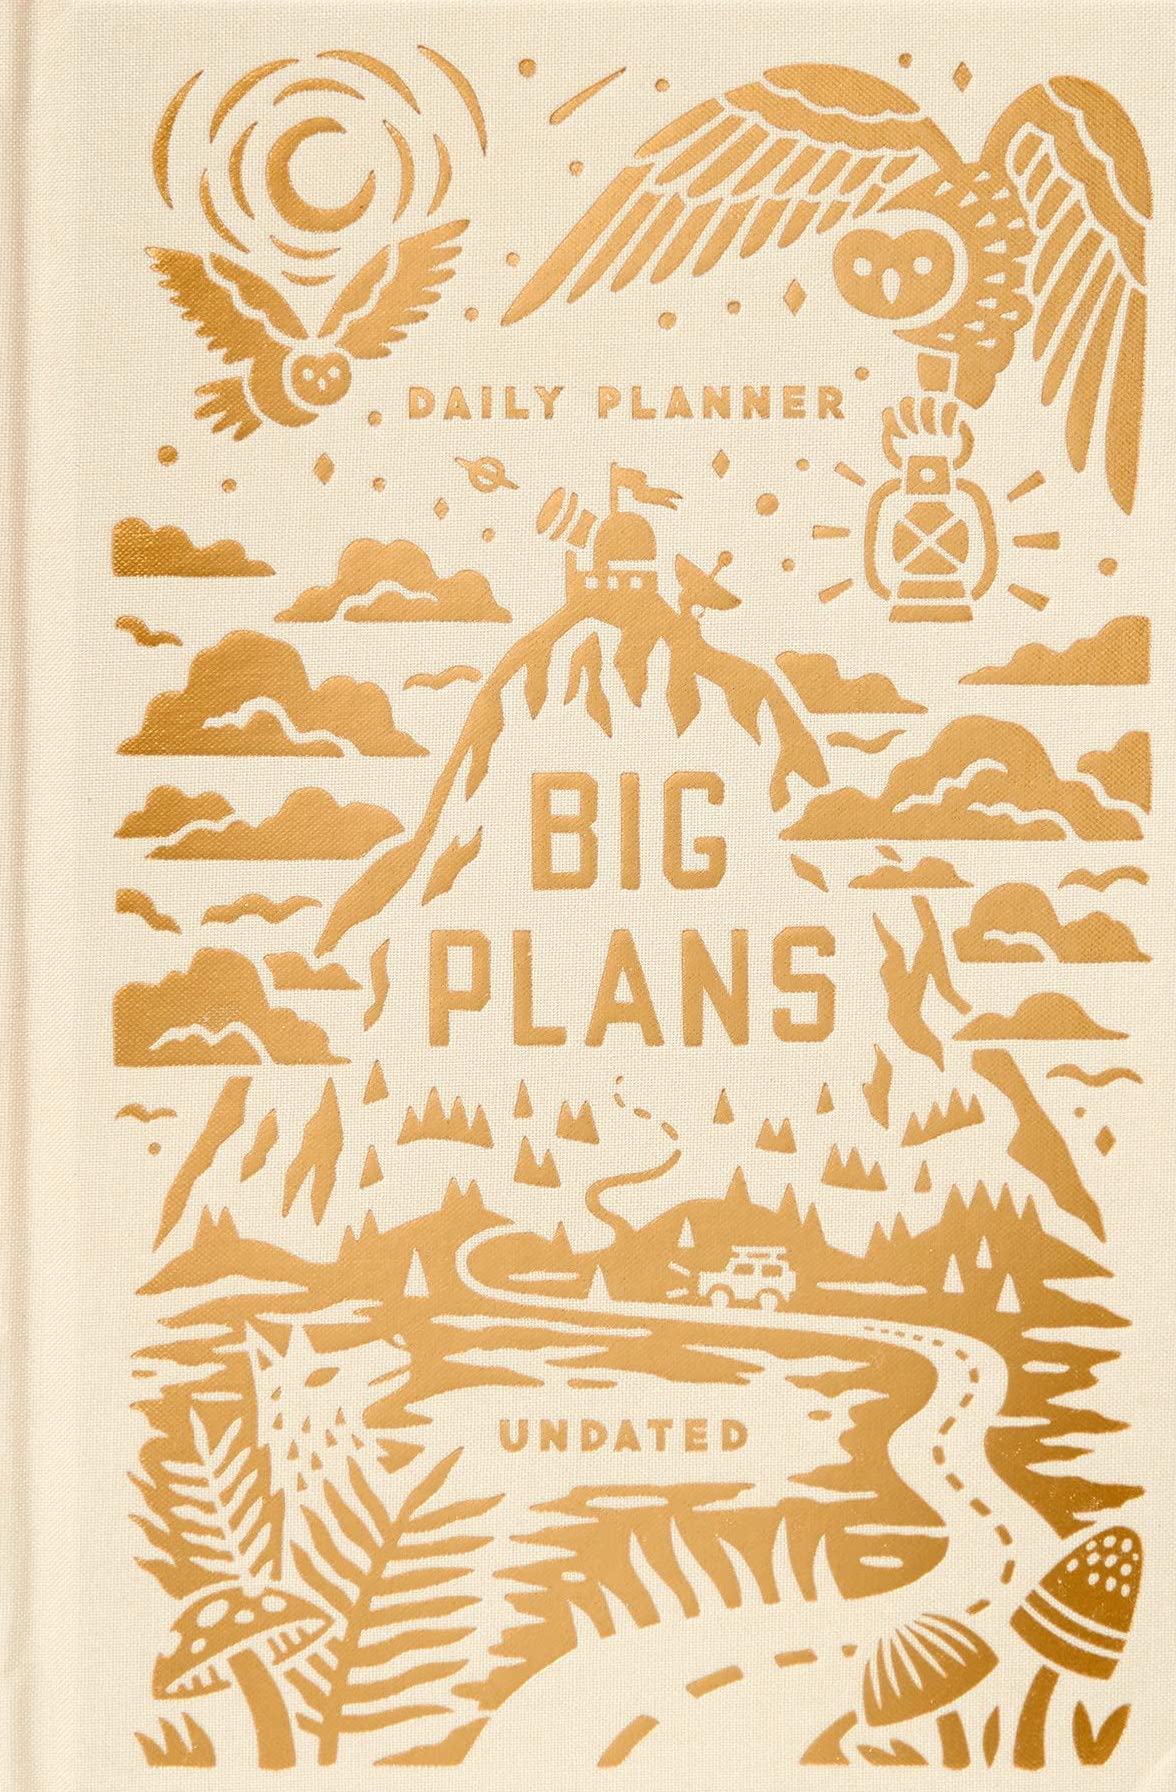 Big Plans Undated Standard Planner